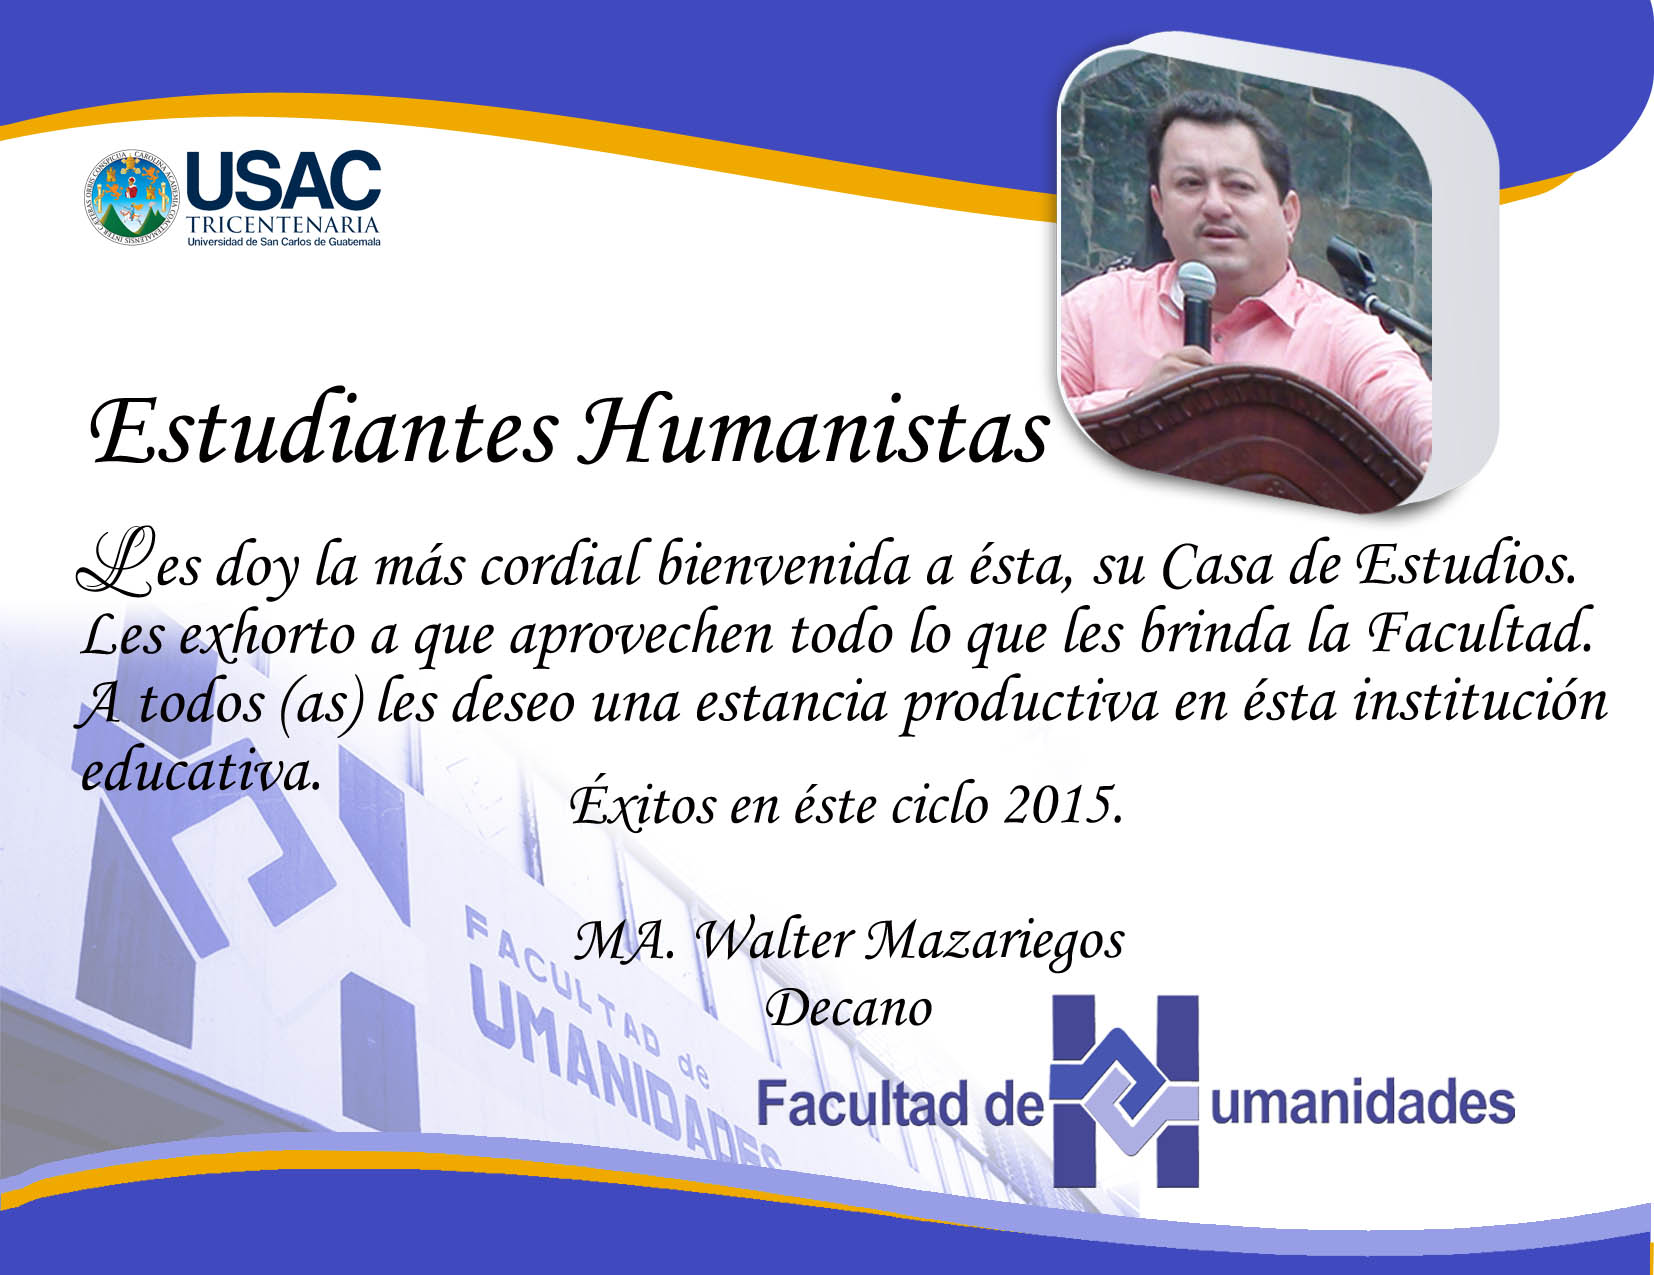 FAHUSAC - Facultad de Humanidades - USAC